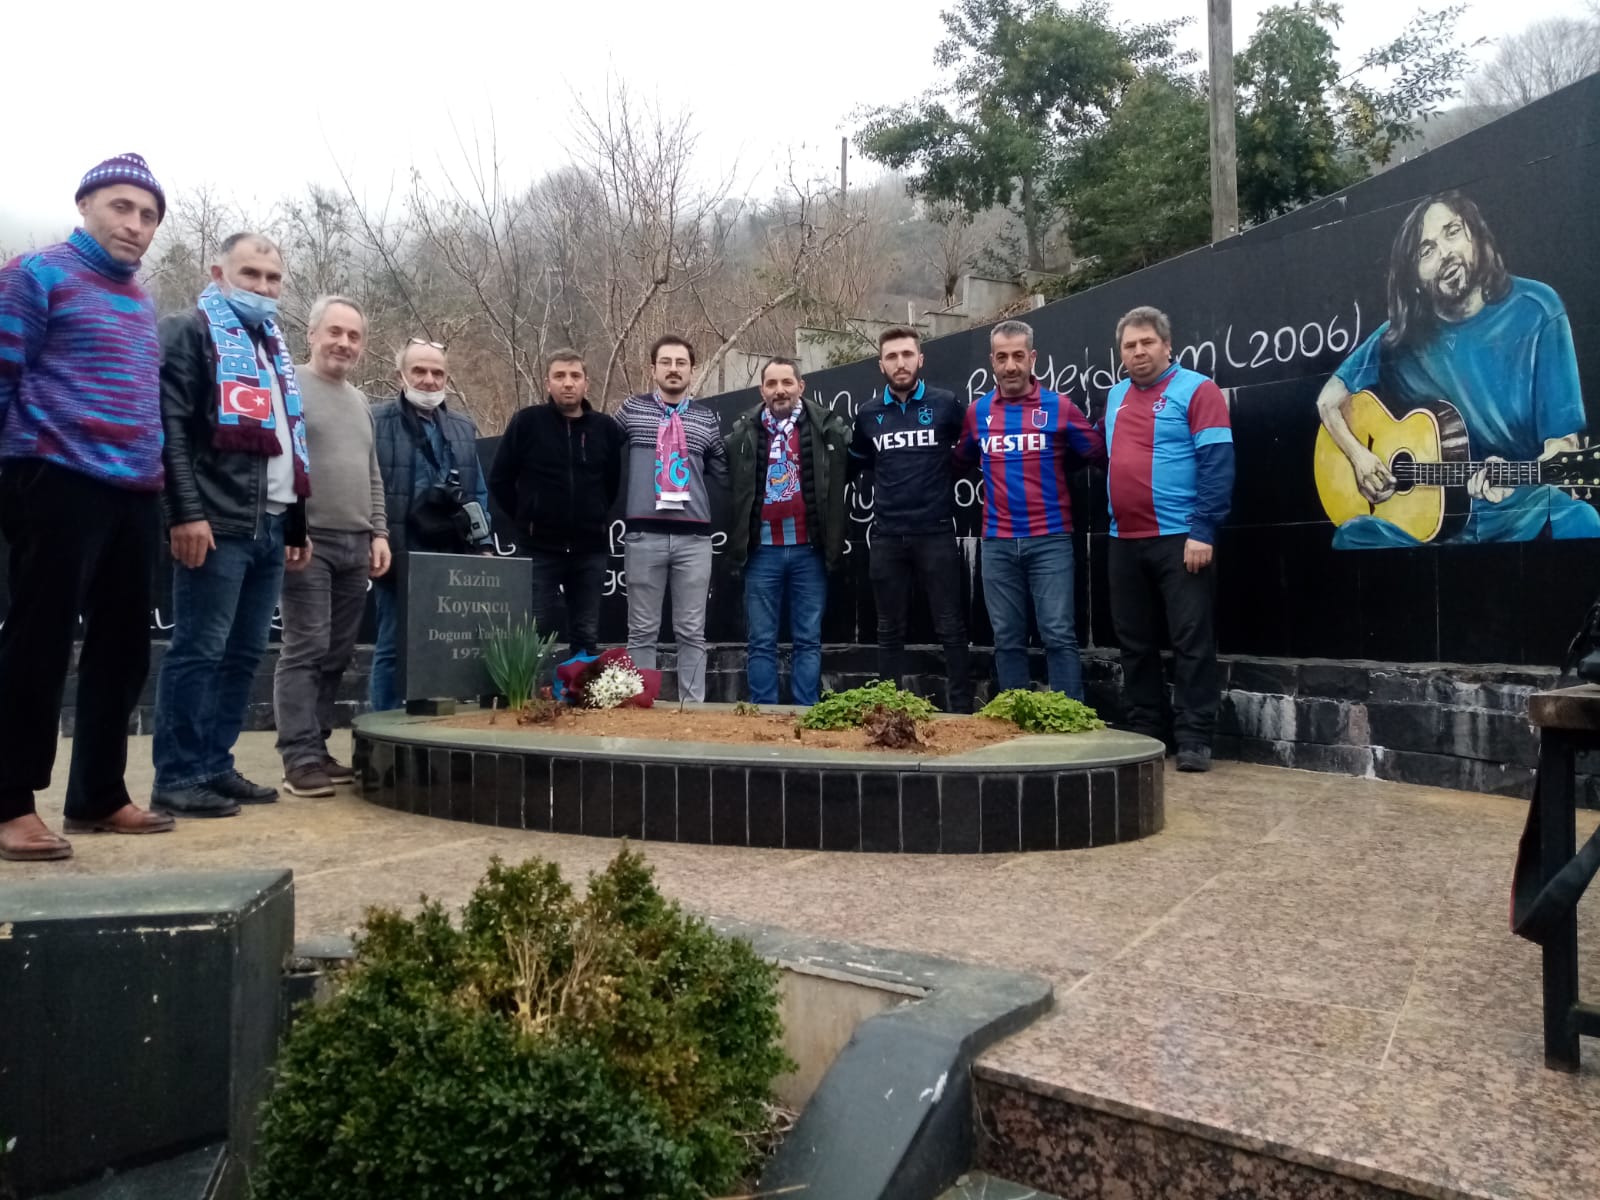 Artvin Trabzonspor Taraftarlar Derneği üyeleri, sanatçı Kazım Koyuncu’nun mezarını ziyaret etti